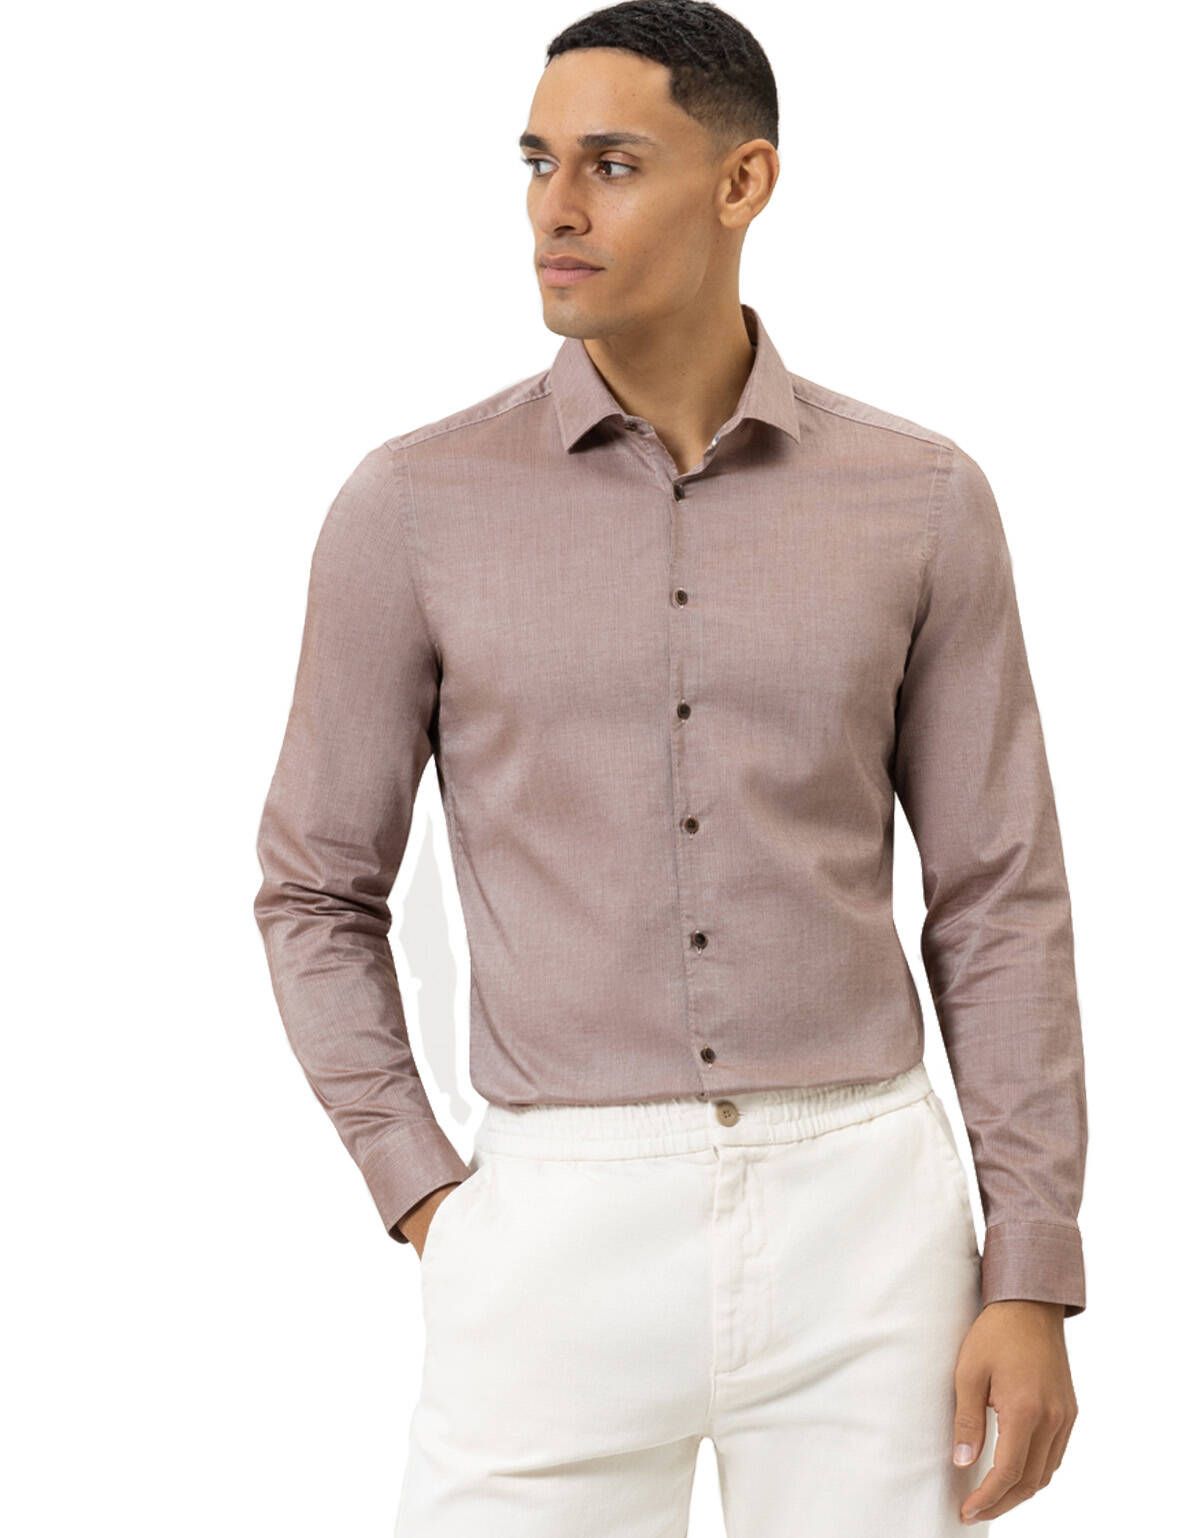 Рубашка мужская OLYMP Smart Casual, body fit[КОРИЧНЕВЫЙ]